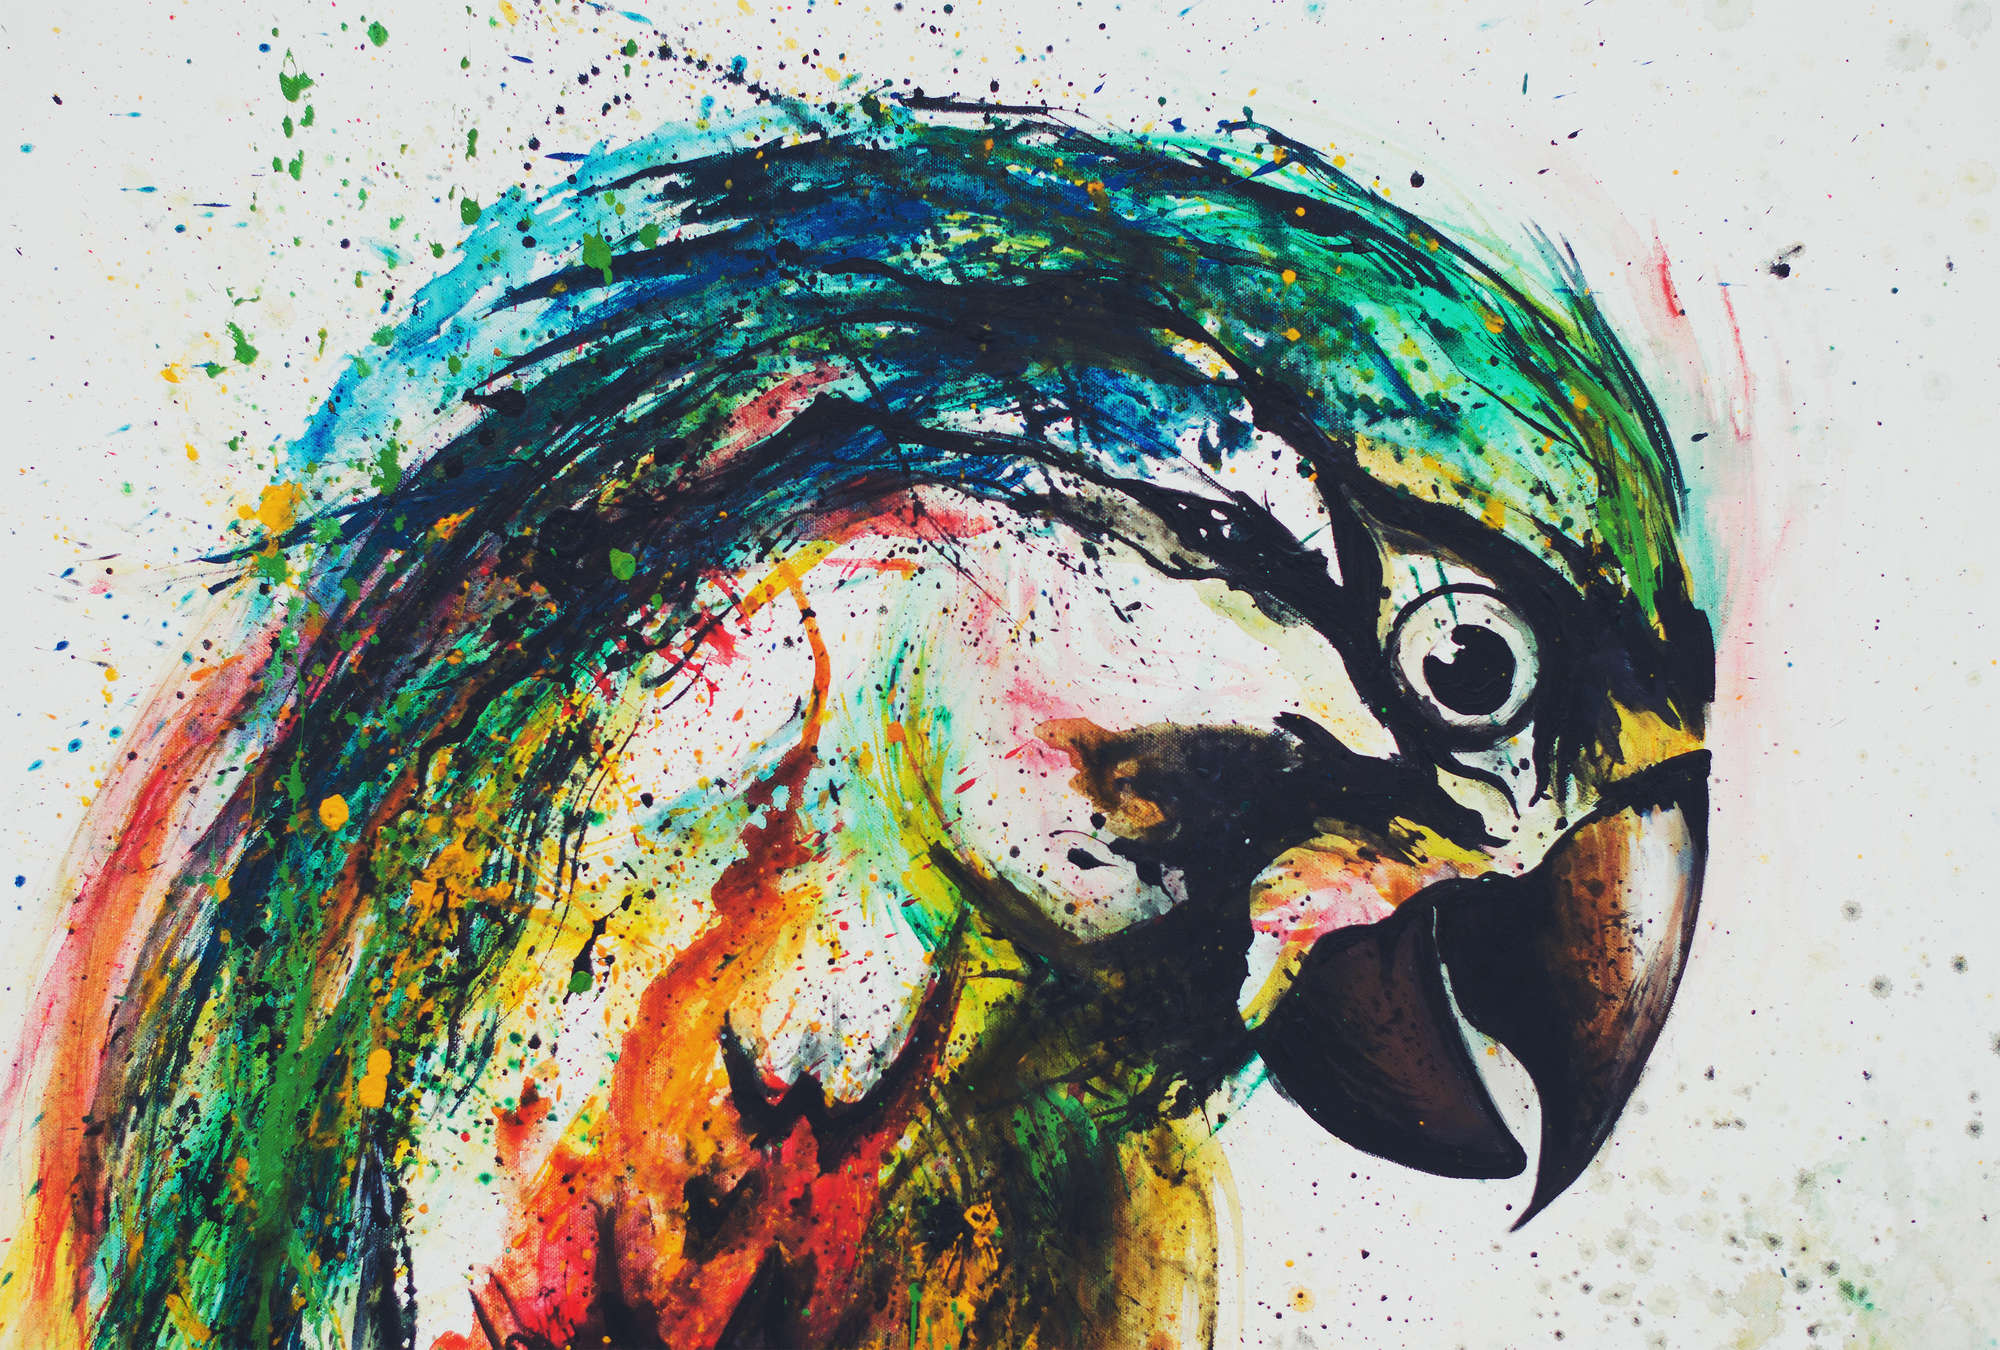             Kleurrijke papegaaien muurschildering in tekenstijl
        